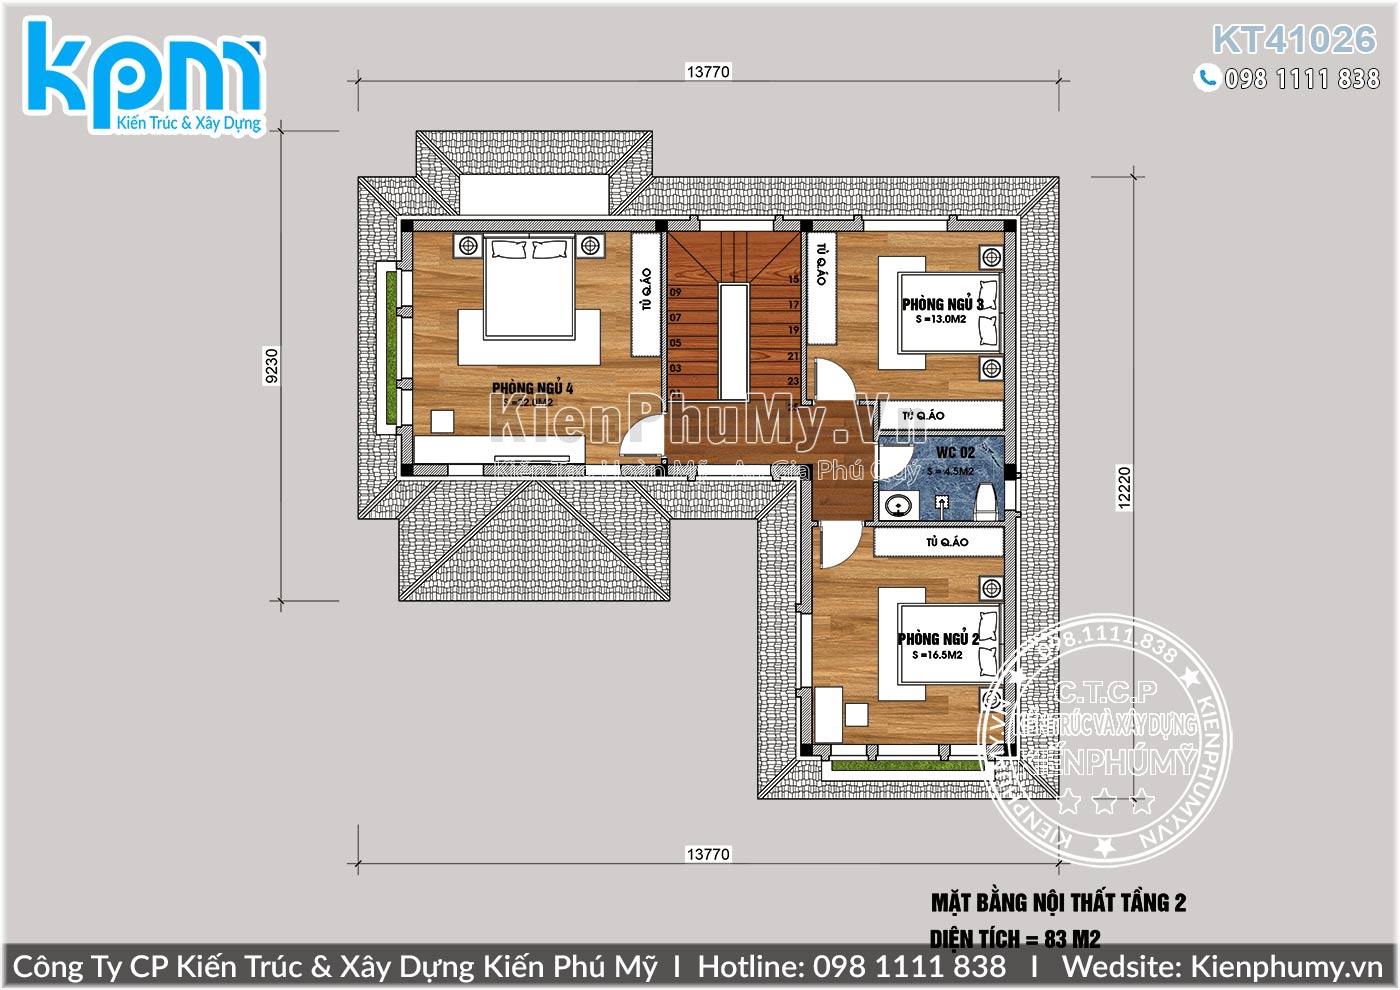 12 mẫu thiết kế nhà chữ l 1 tầng 2 3 phòng ngủ mái thái 2022 T072022